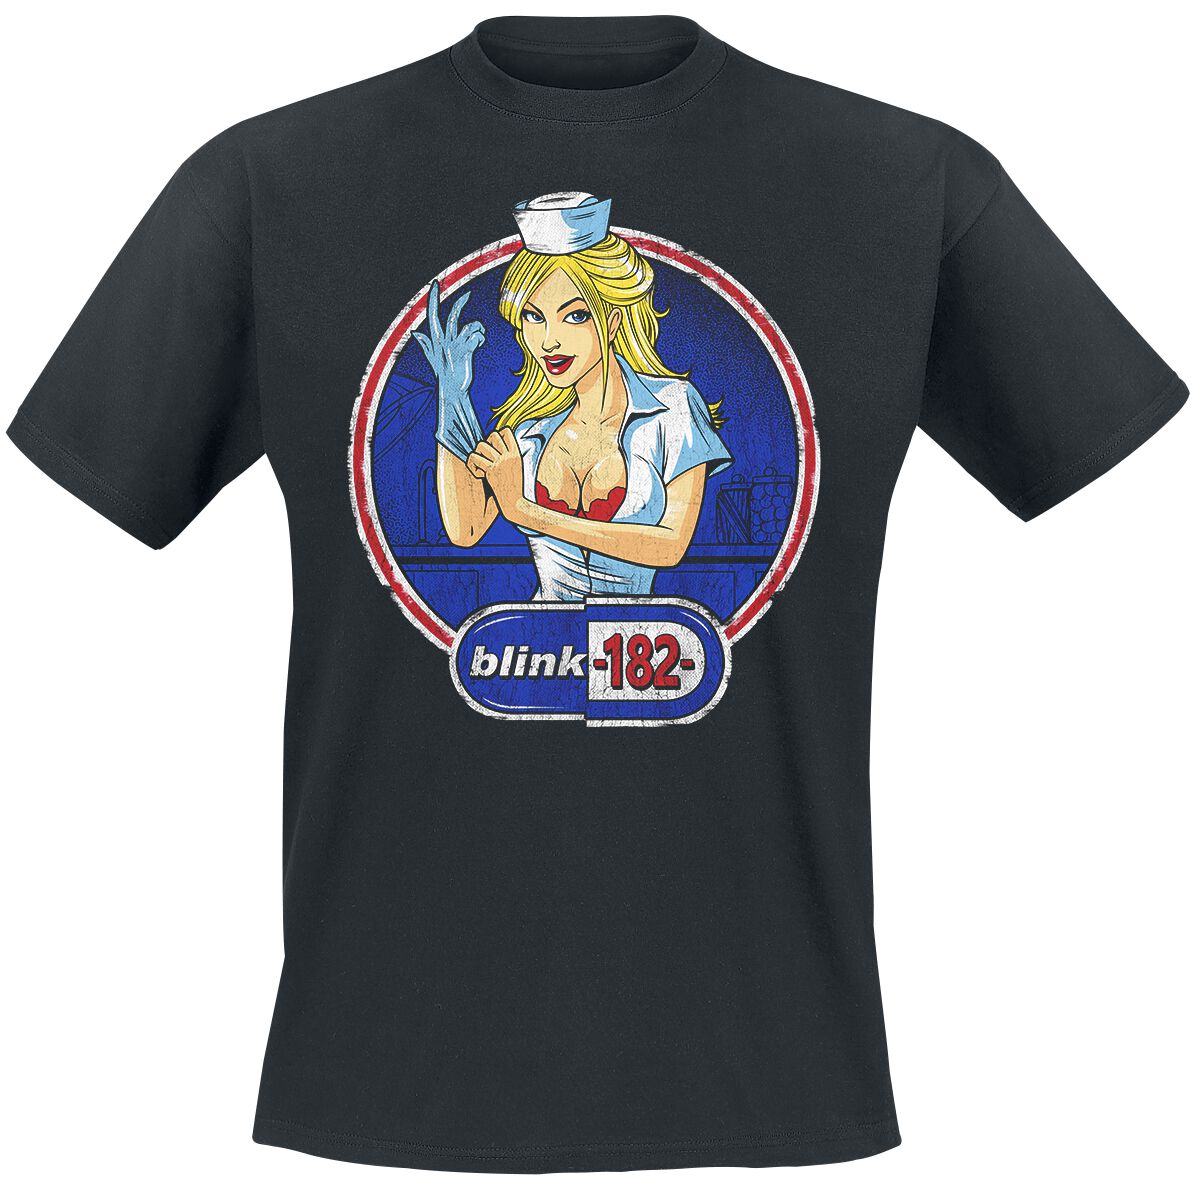 Blink-182 T-Shirt - Enema Nurse - S bis 3XL - für Männer - Größe L - schwarz  - Lizenziertes Merchandise!